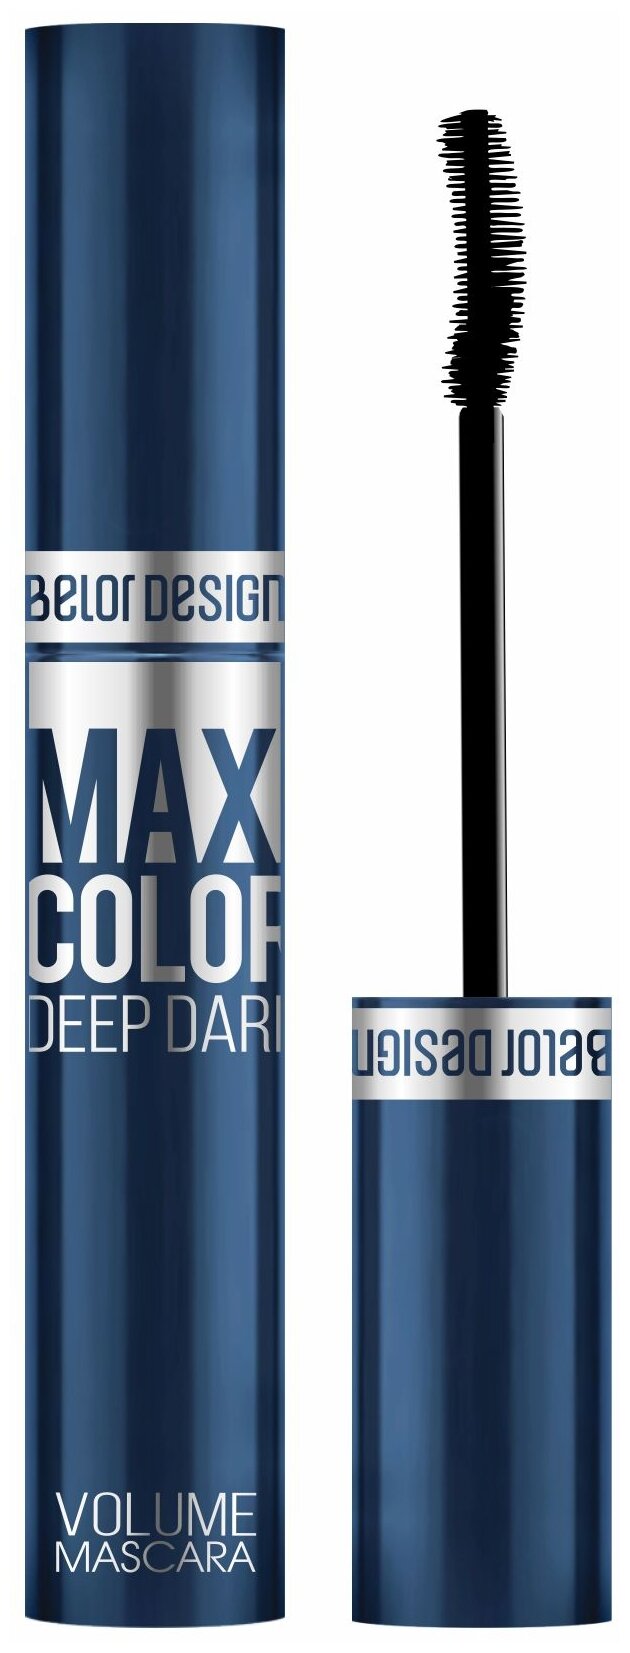    BELOR DESIGN Maxi Color , 